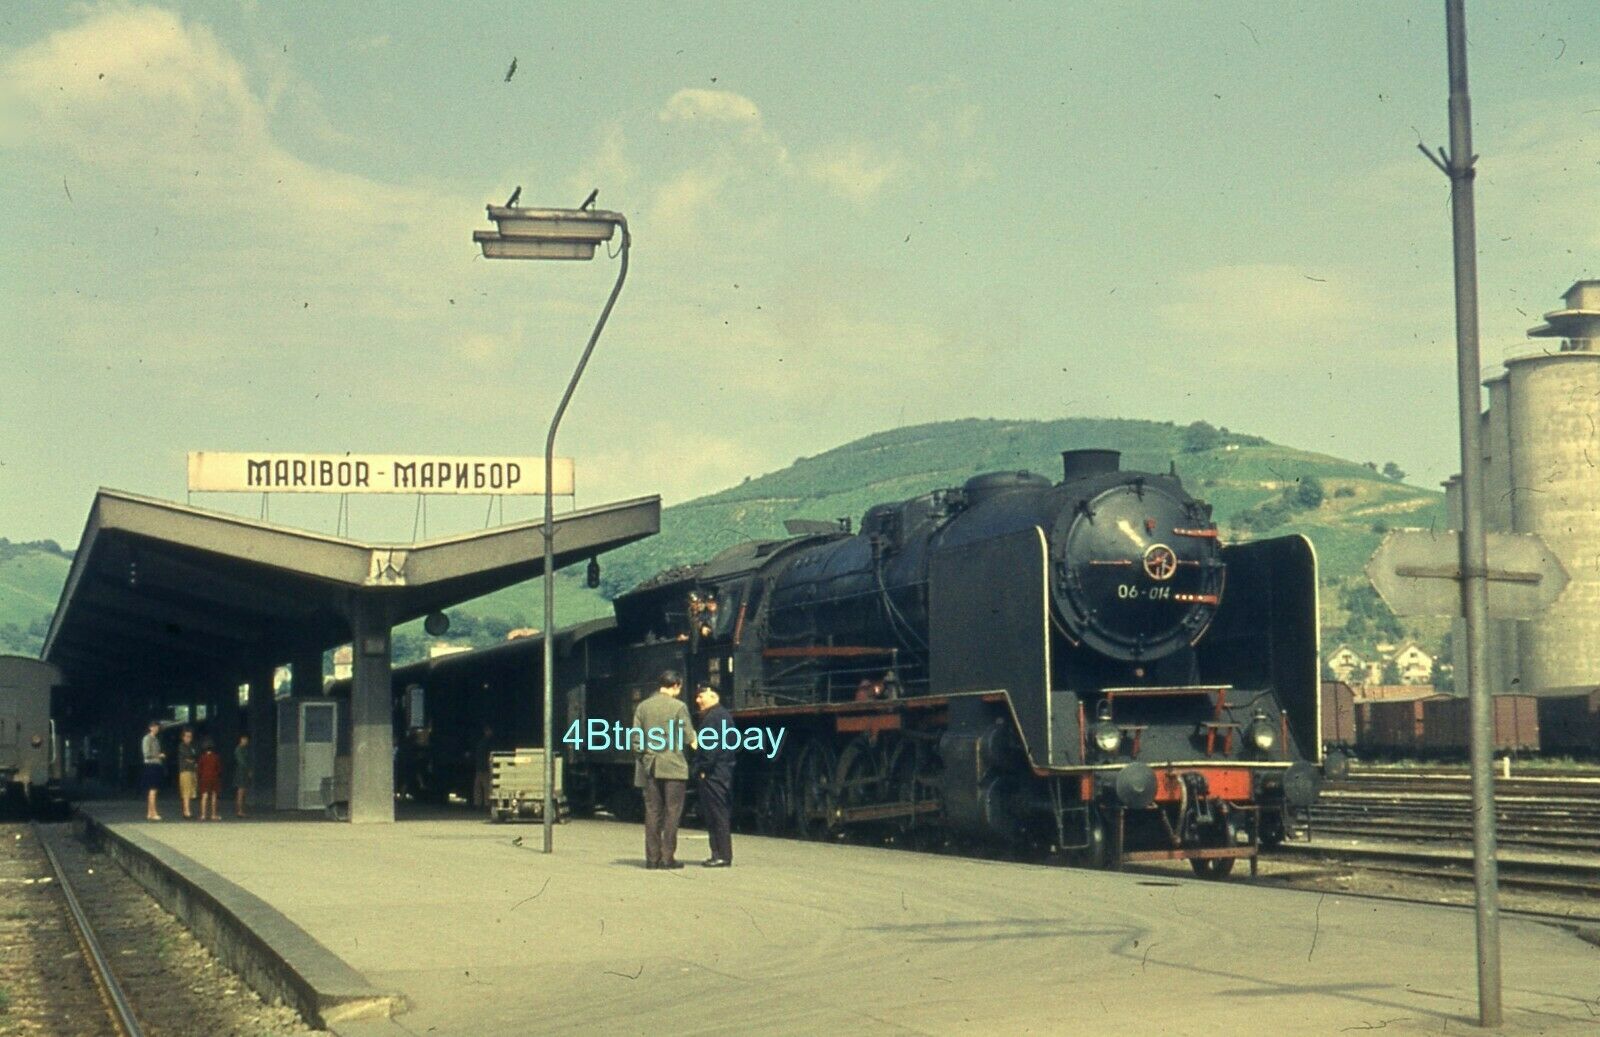 s-l1600 06-014 at Maribor 1964.jpg